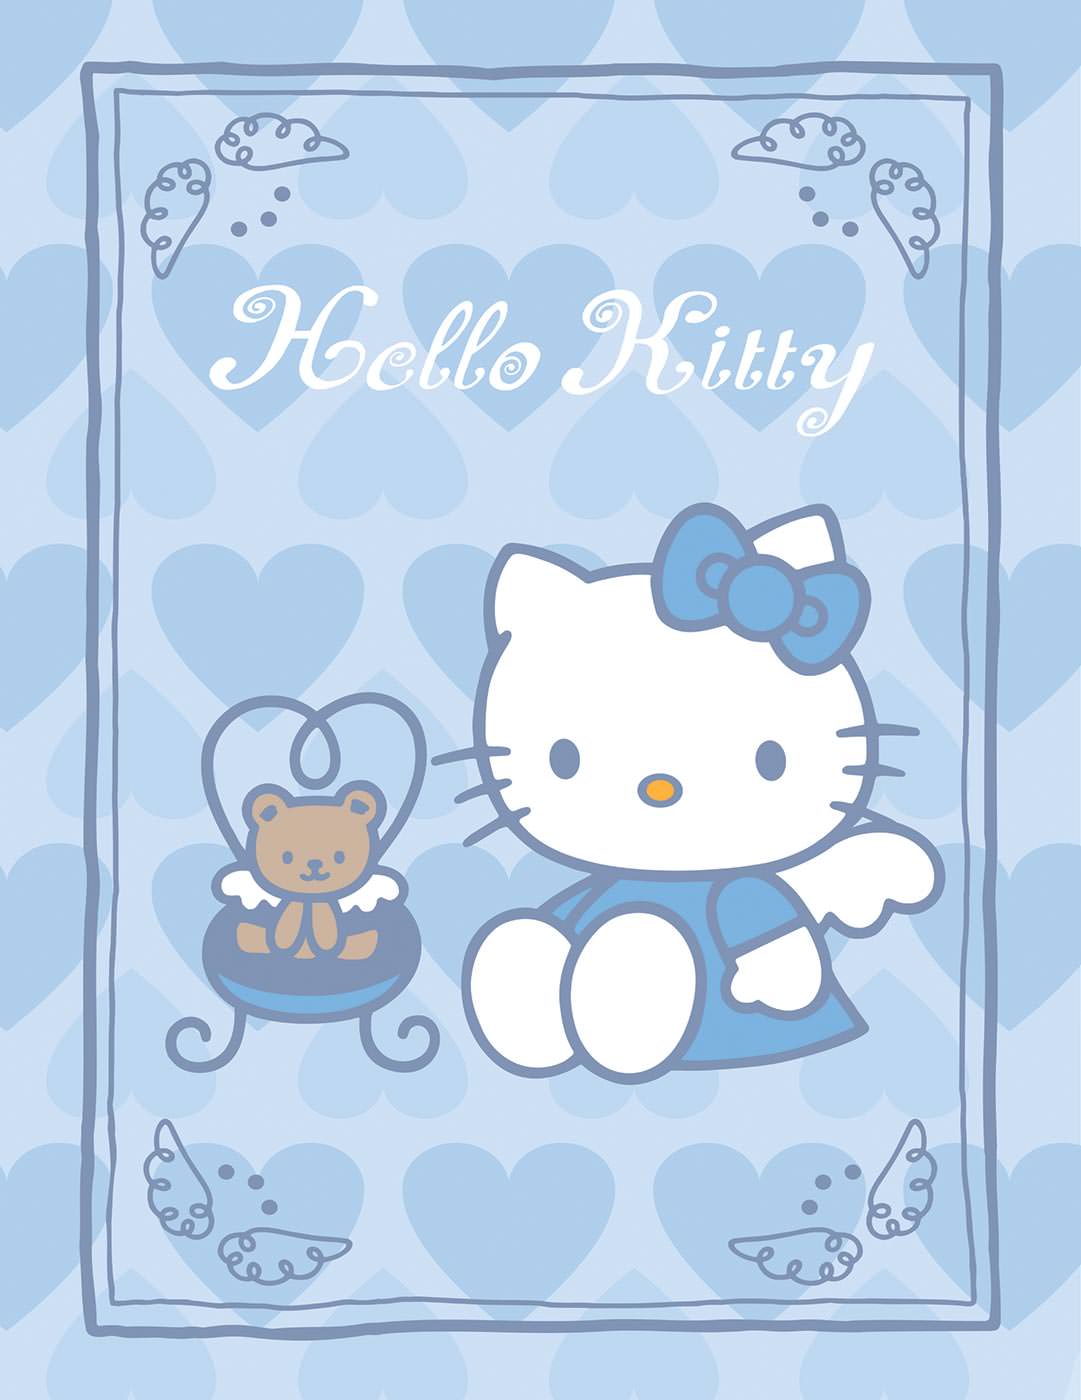 Hello Kitty - Фотообои для детской комнаты в интернет магазине arte.ru. Заказать обои в детскую комнату Hello Kitty - (14400)